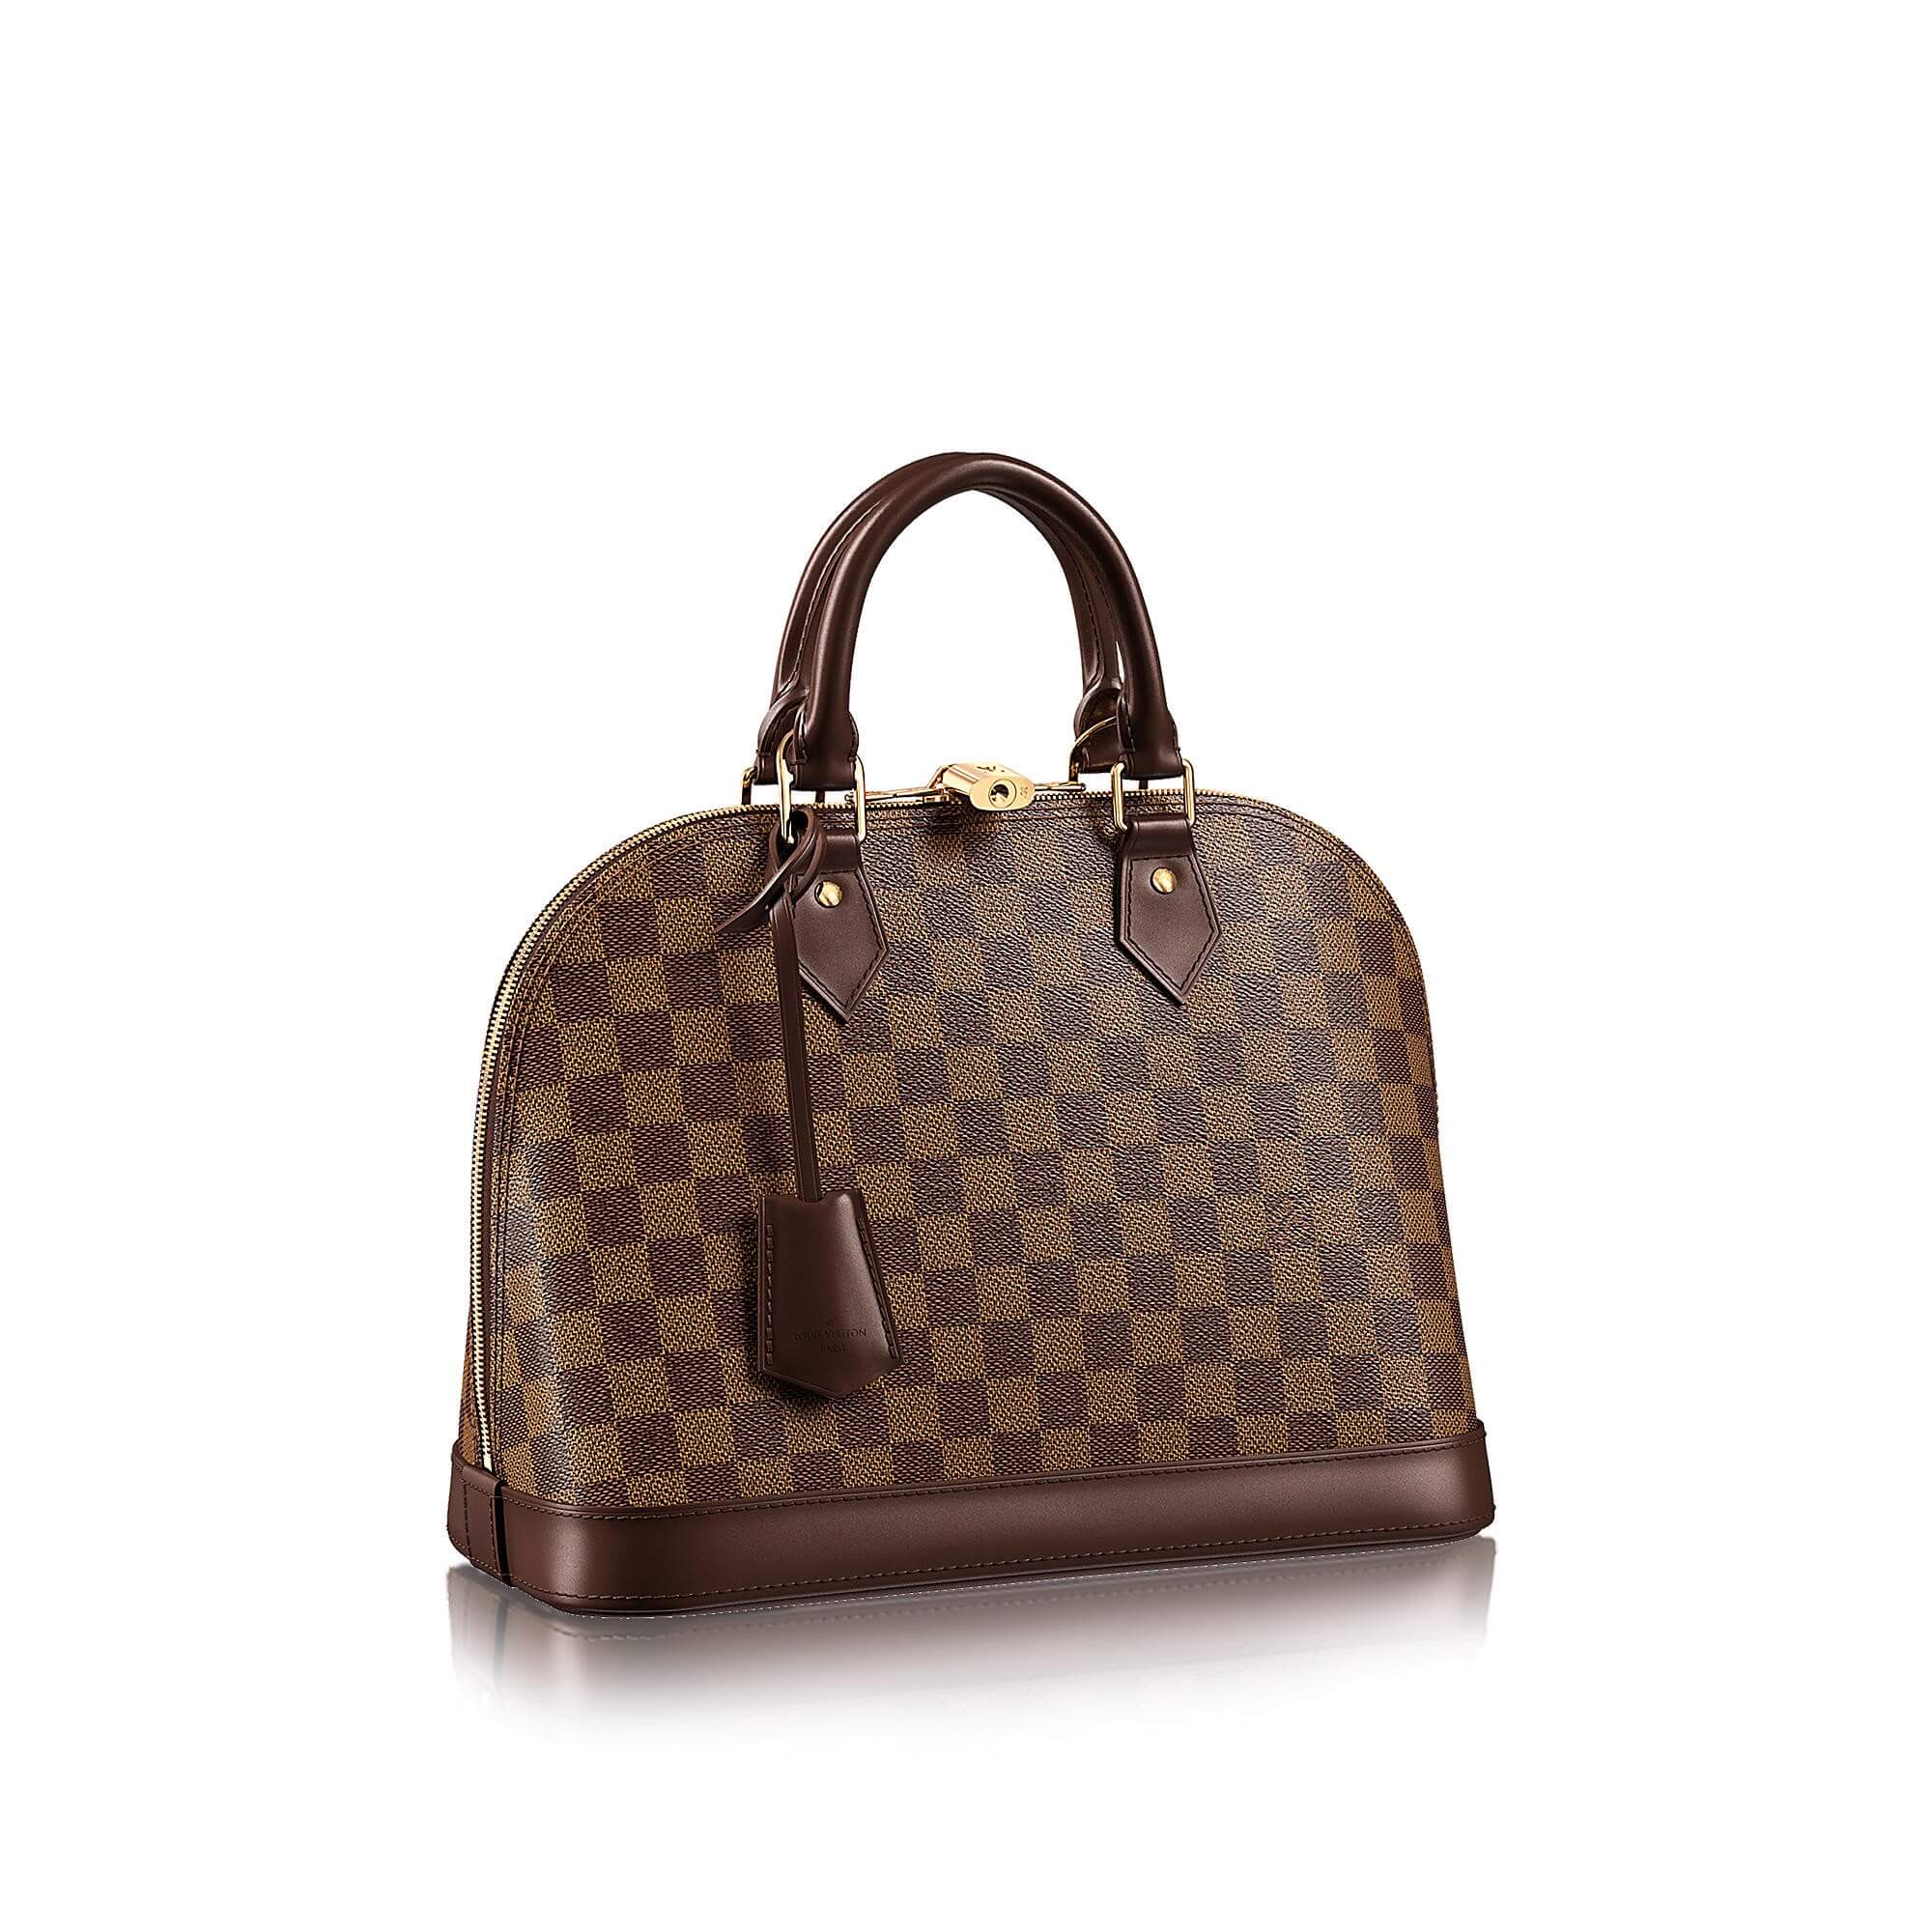 Louis Vuitton Alma bag